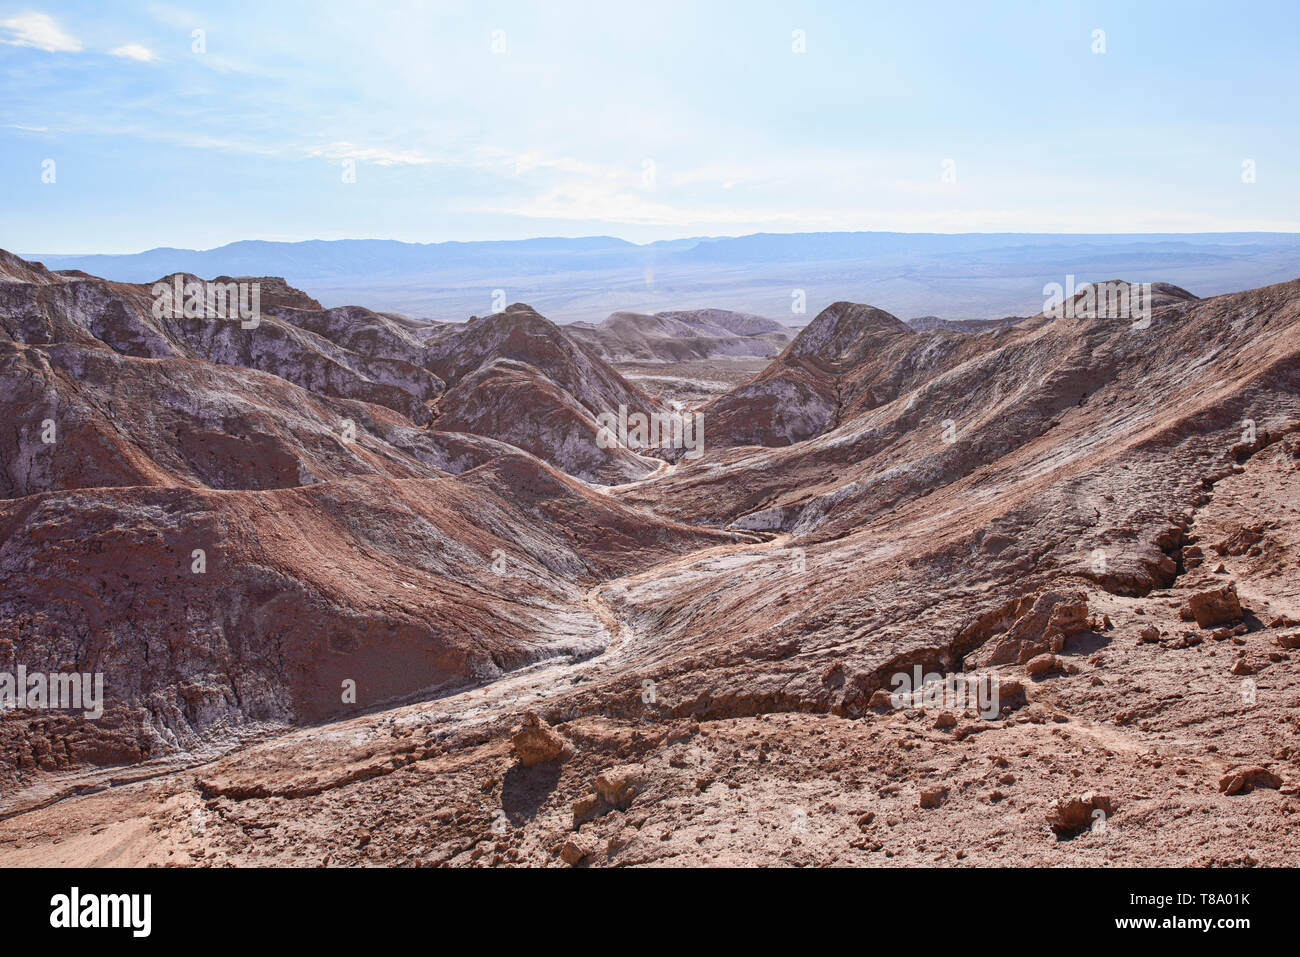 Sale, sabbia, e desertscape nella Valle della Luna, San Pedro de Atacama, Cile Foto Stock